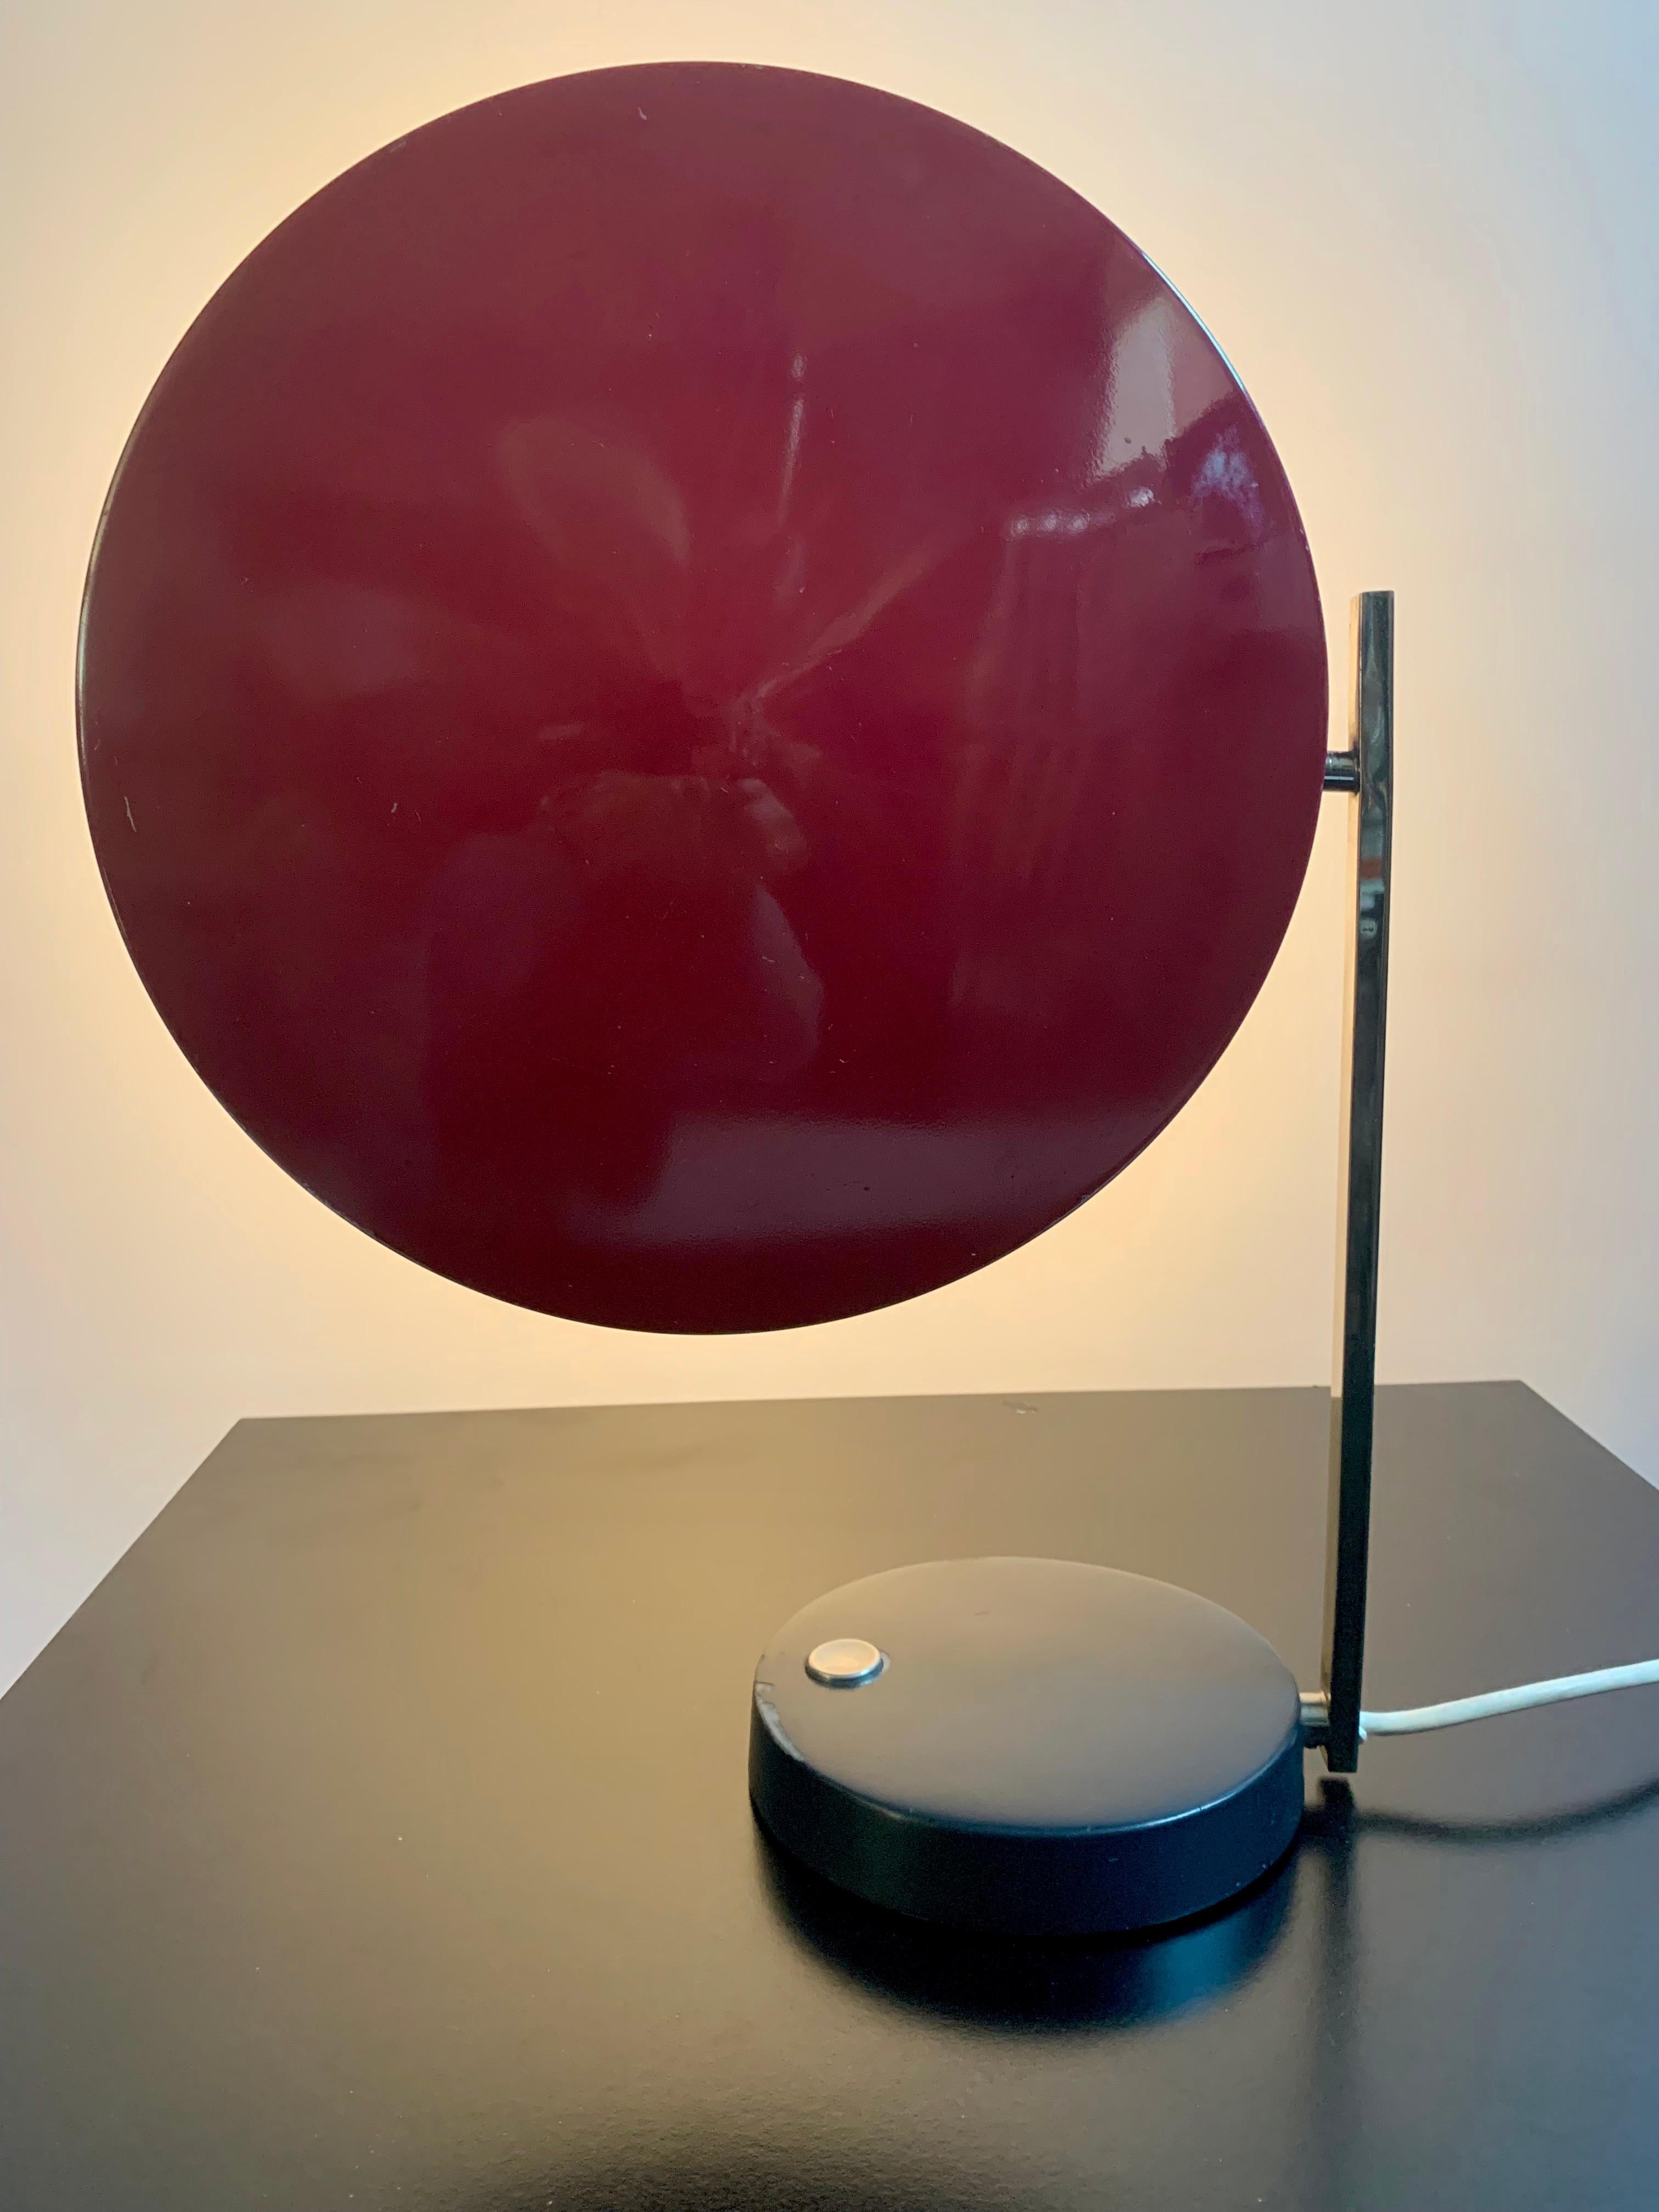 Lampada da tavolo modernista in stile Bauhaus realizzata da Heinz Pfaender per Hillebrand Leuchten nel 1961.
 
Ottima combinazione di colori (originali): nero, cromo e rosso. Il paralume in metallo può essere ruotato da orizzontale a verticale. In